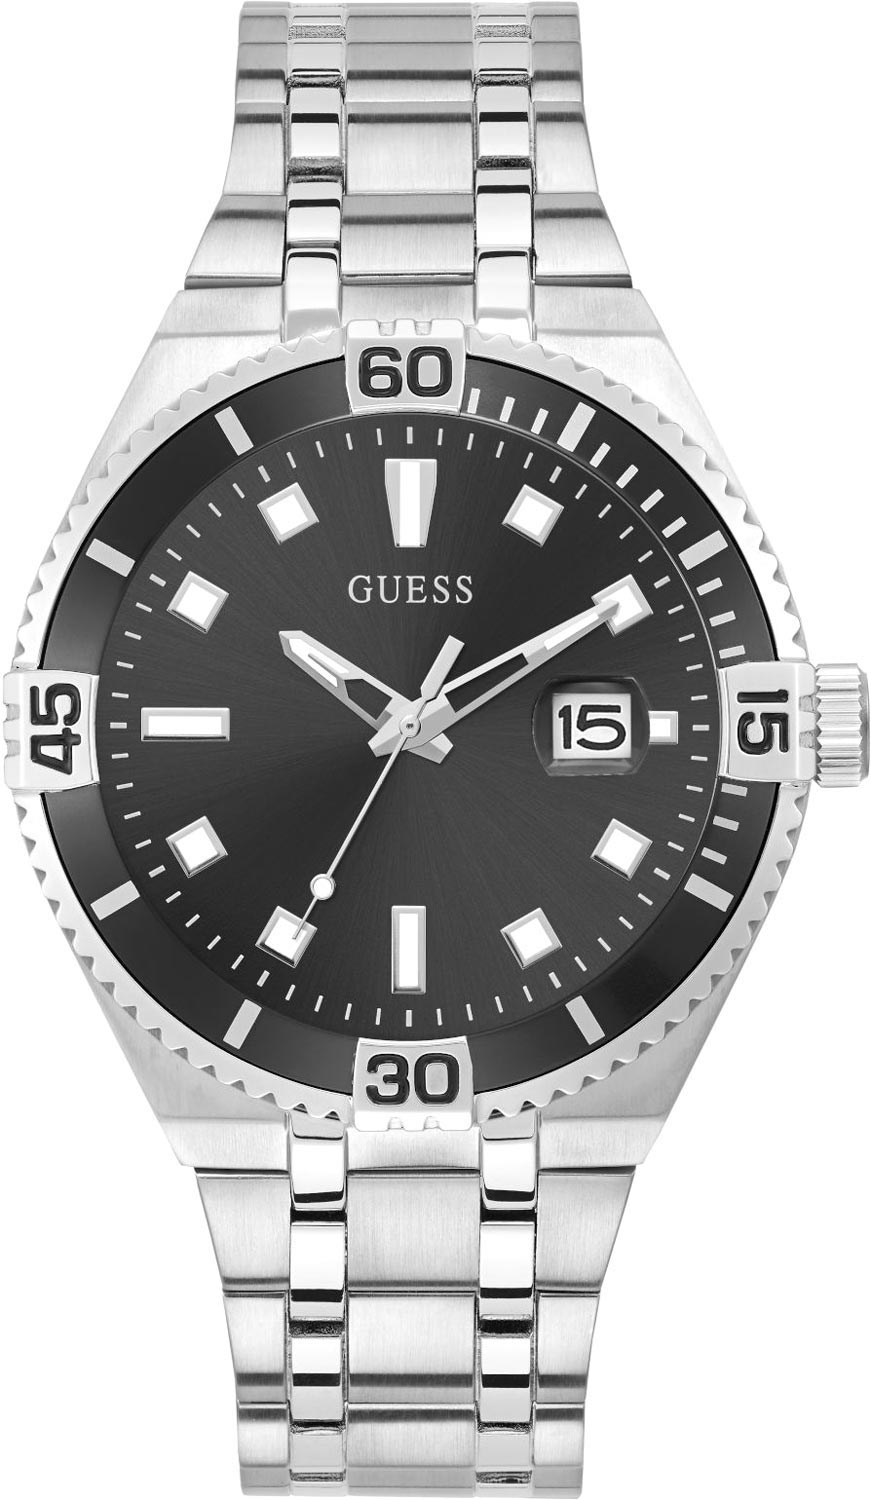 Мужские часы Guess GW0330G1 мужские часы guess gw0368g1